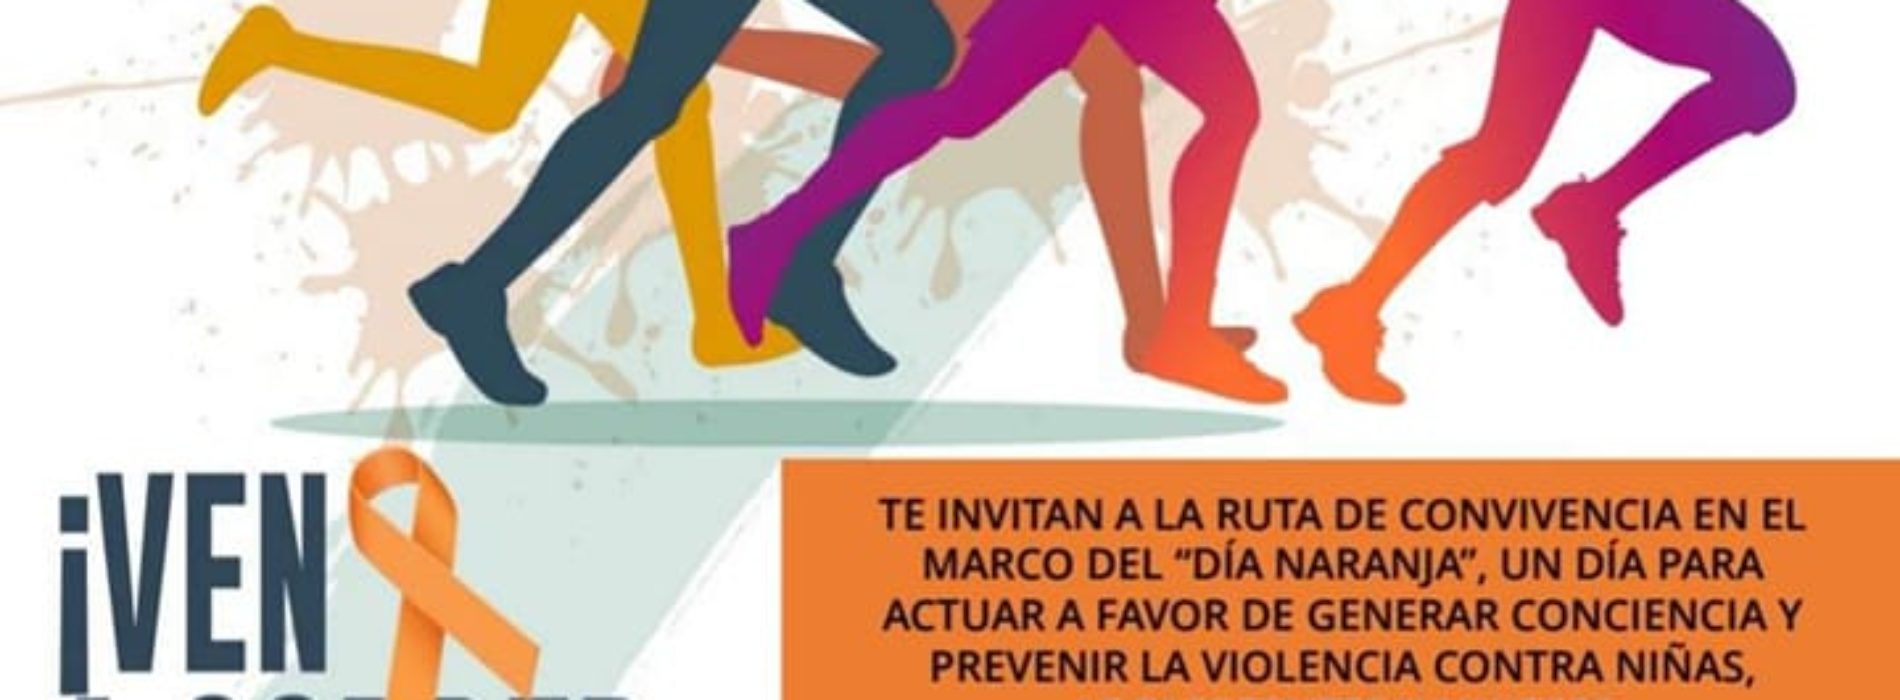 En conmemoración al Día Naranja impulsa SSPO actividades de prevención contra la violencia.